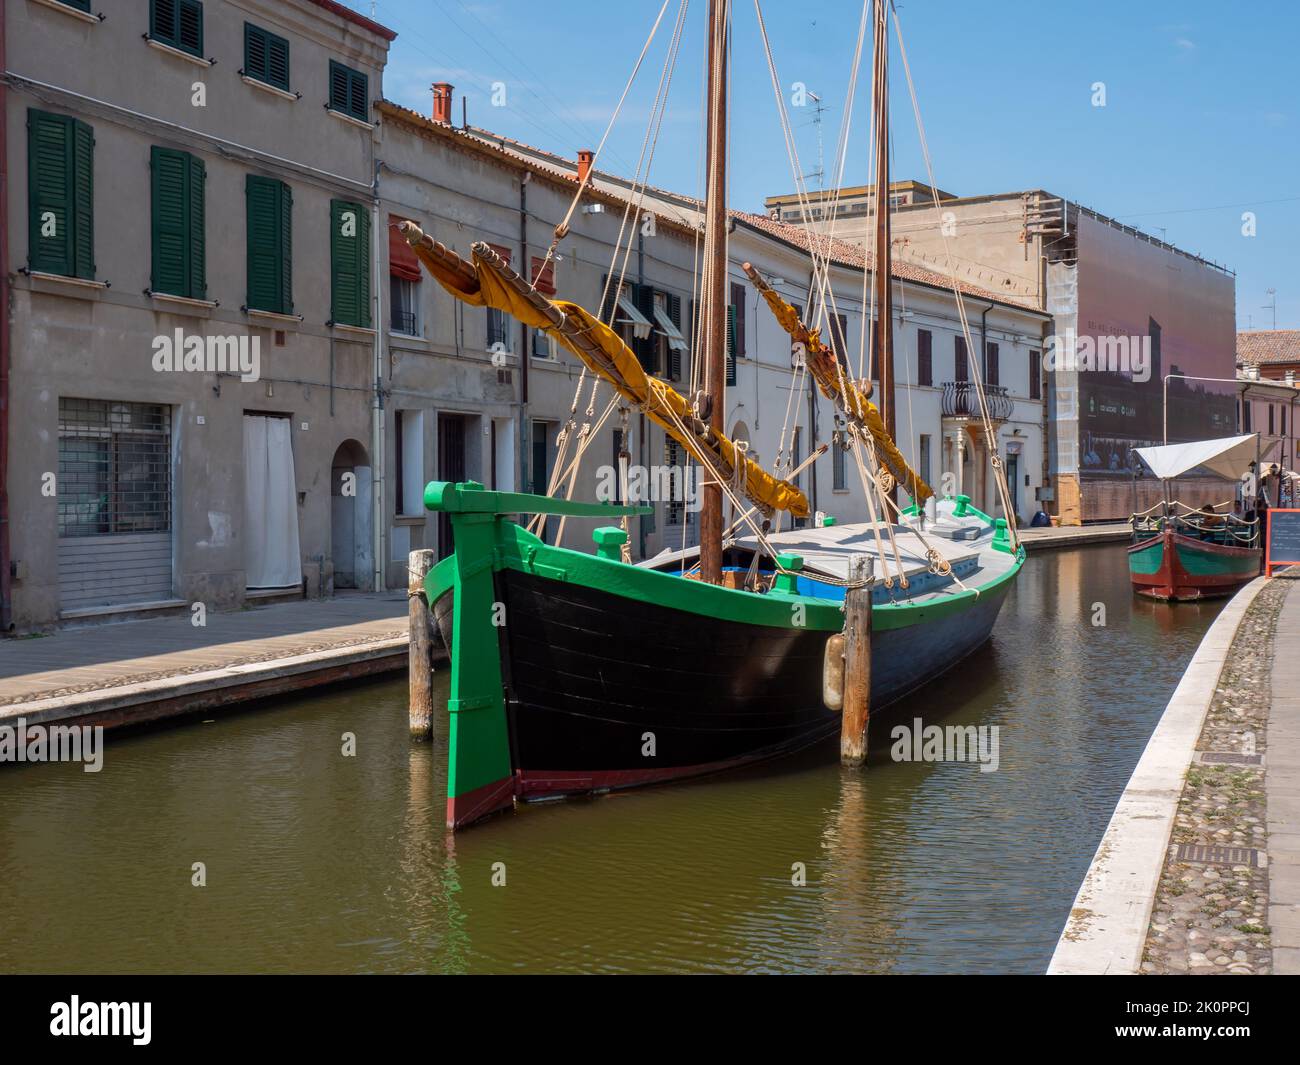 Ship in the historic center of Comacchio Stock Photo